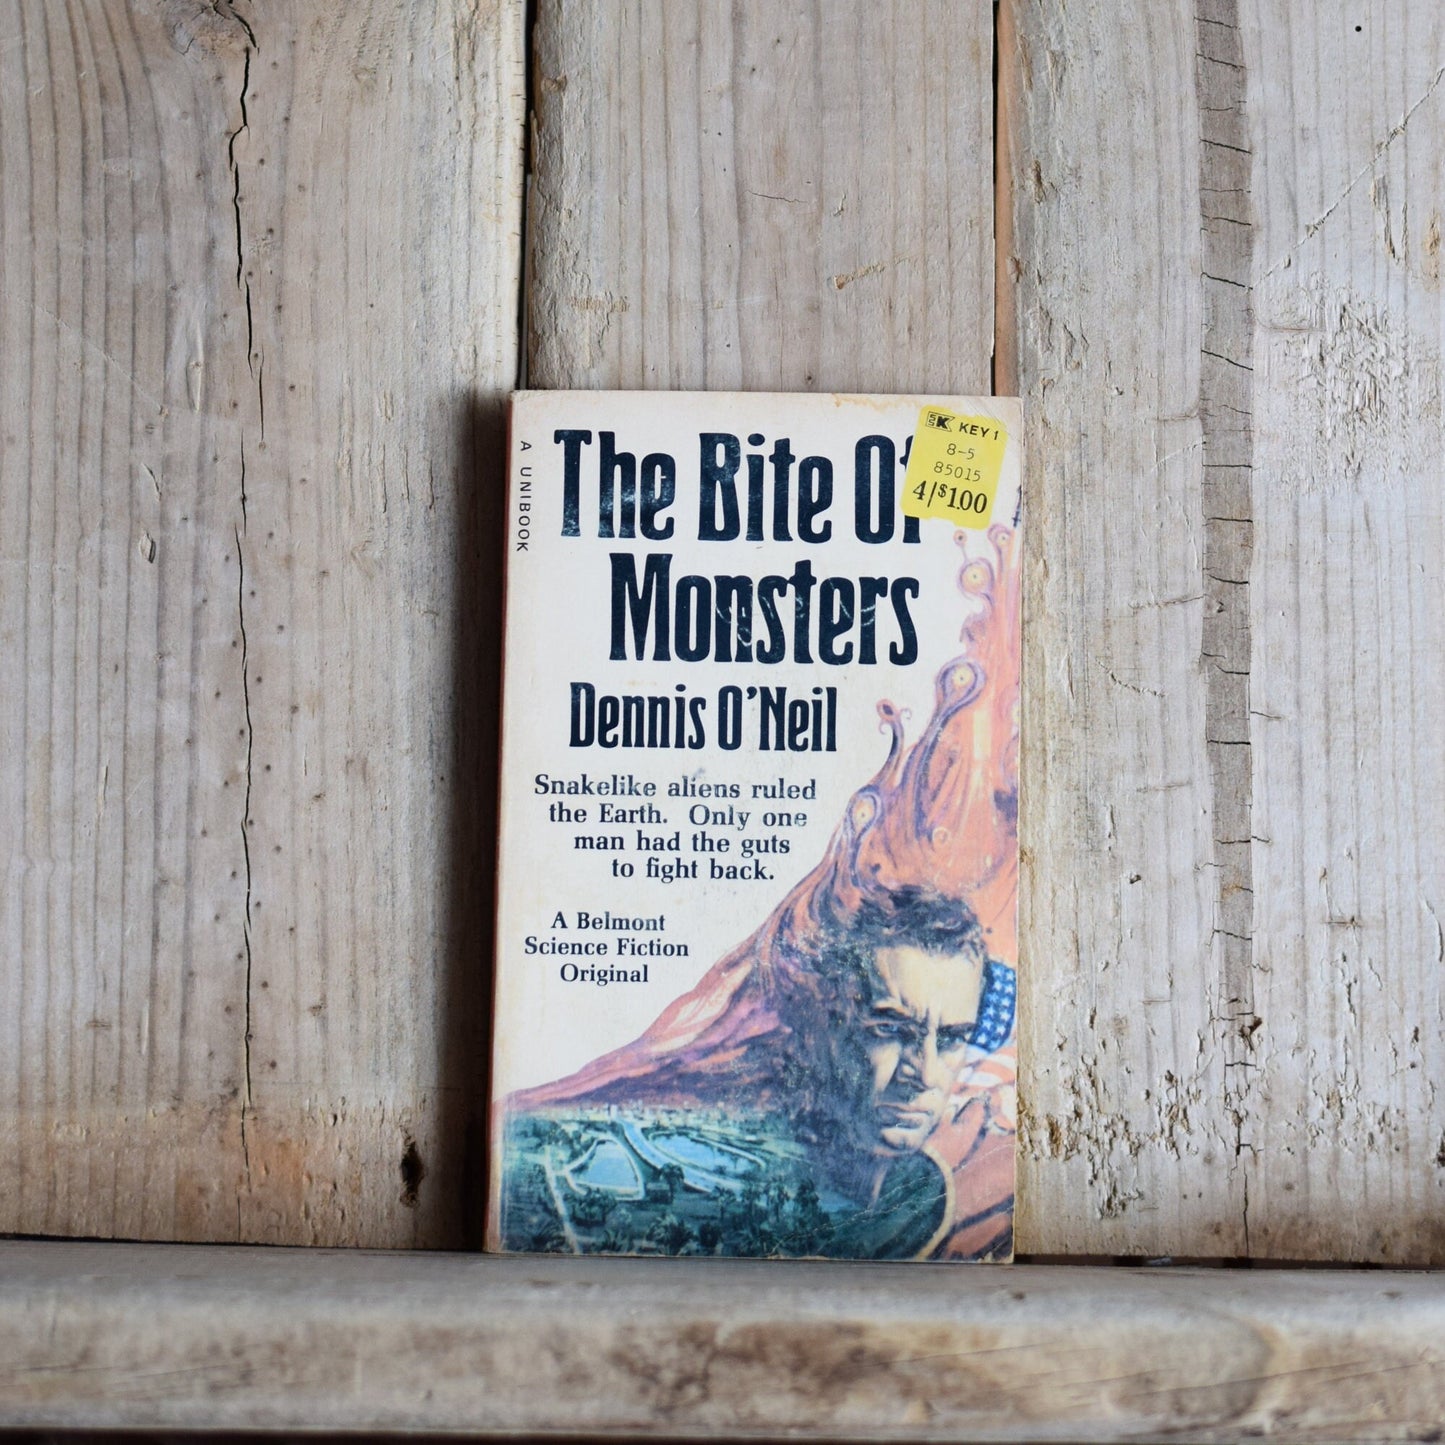 Vintage Sci-Fi Paperback Novel: Dennis O'Neil - The Bite of Monsters